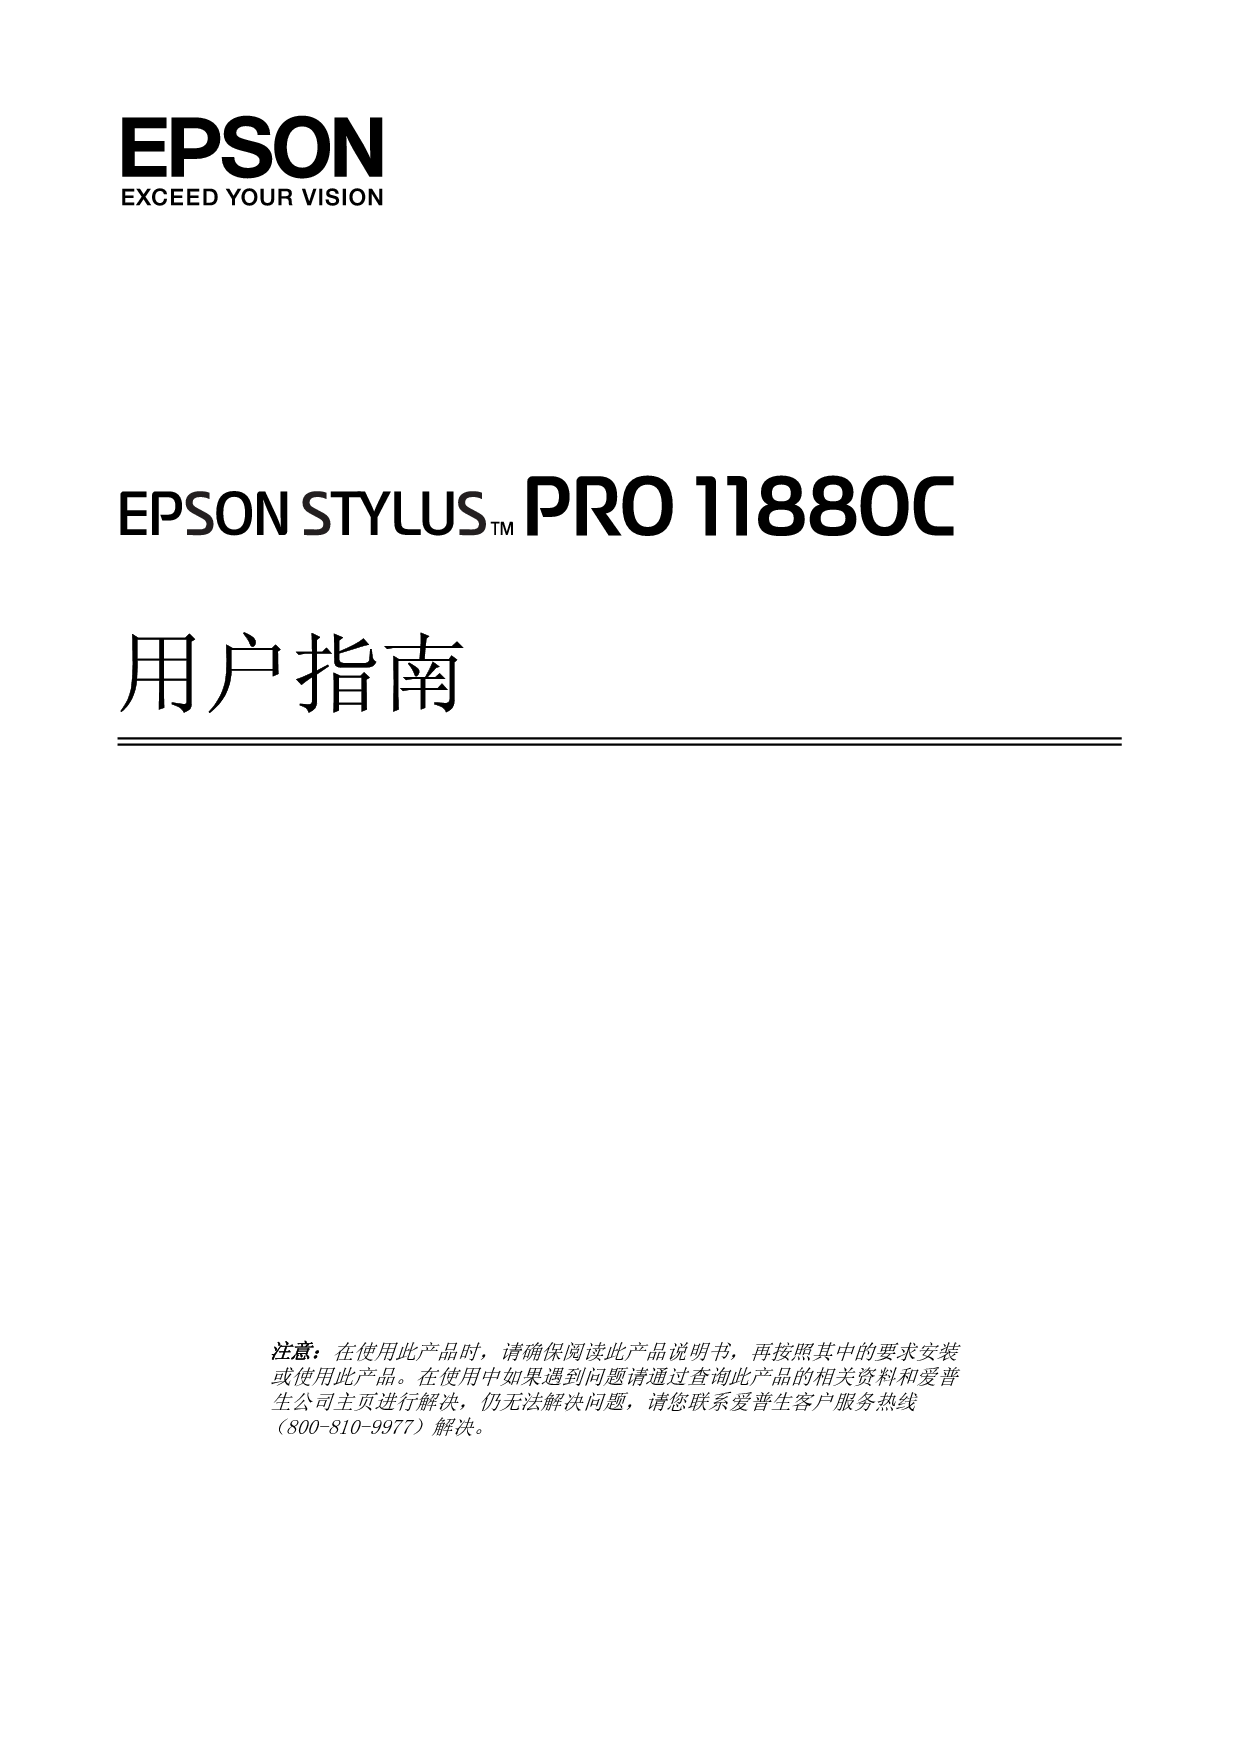 爱普生 Epson STYLUS PRO 11880C 用户指南 封面